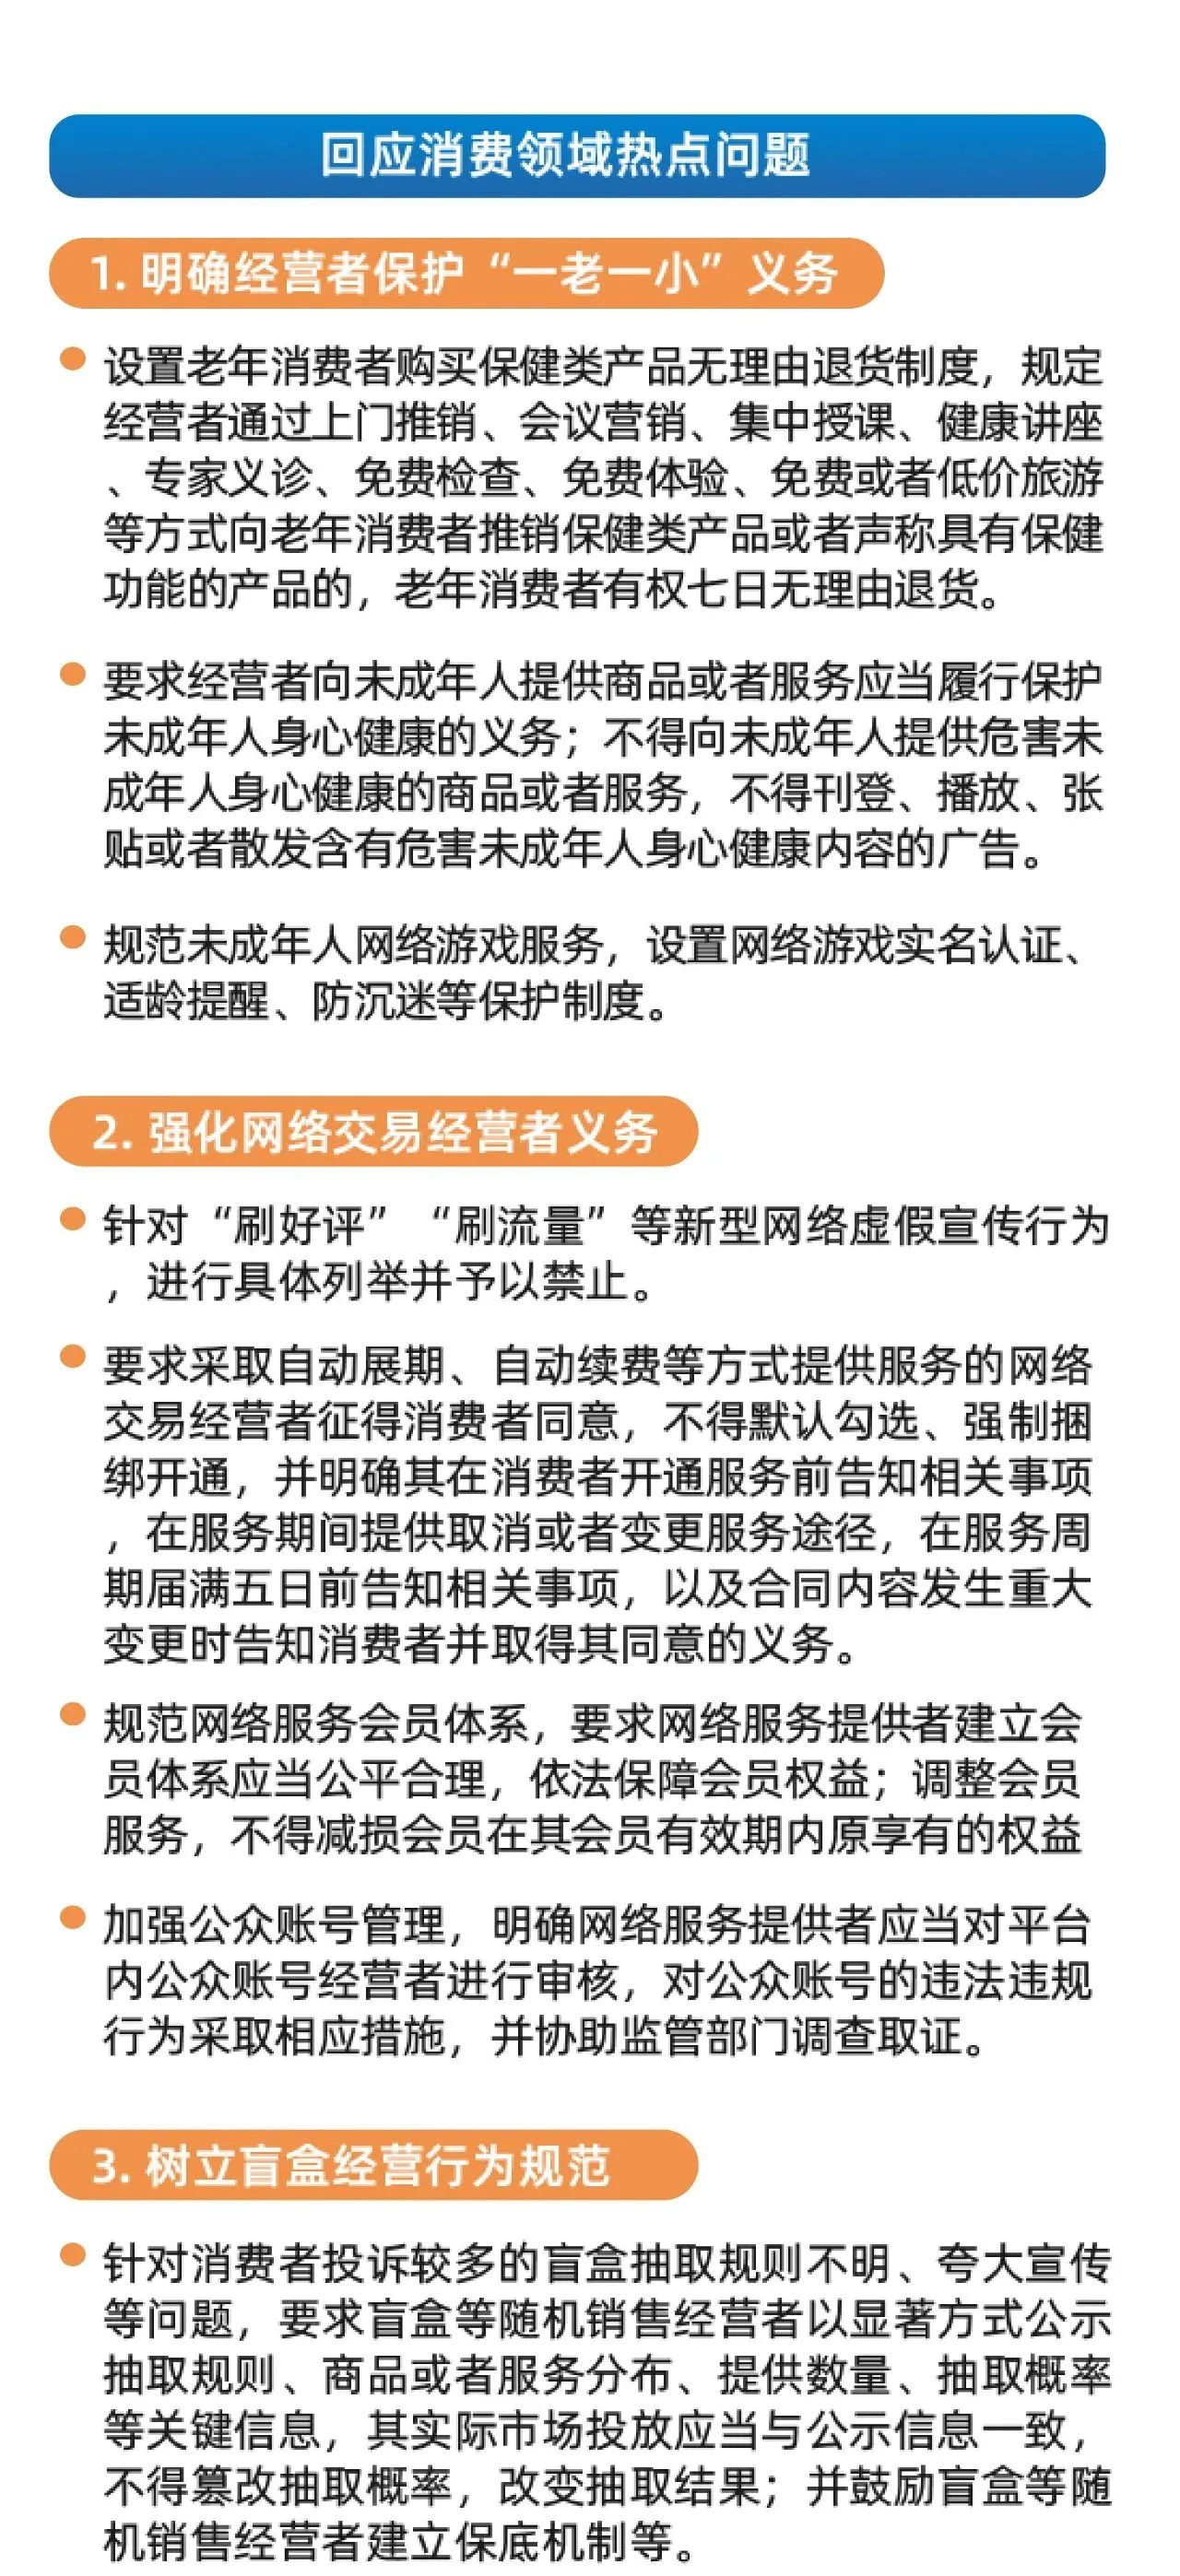 一图读懂|深圳经济特区消费者权益保护条例